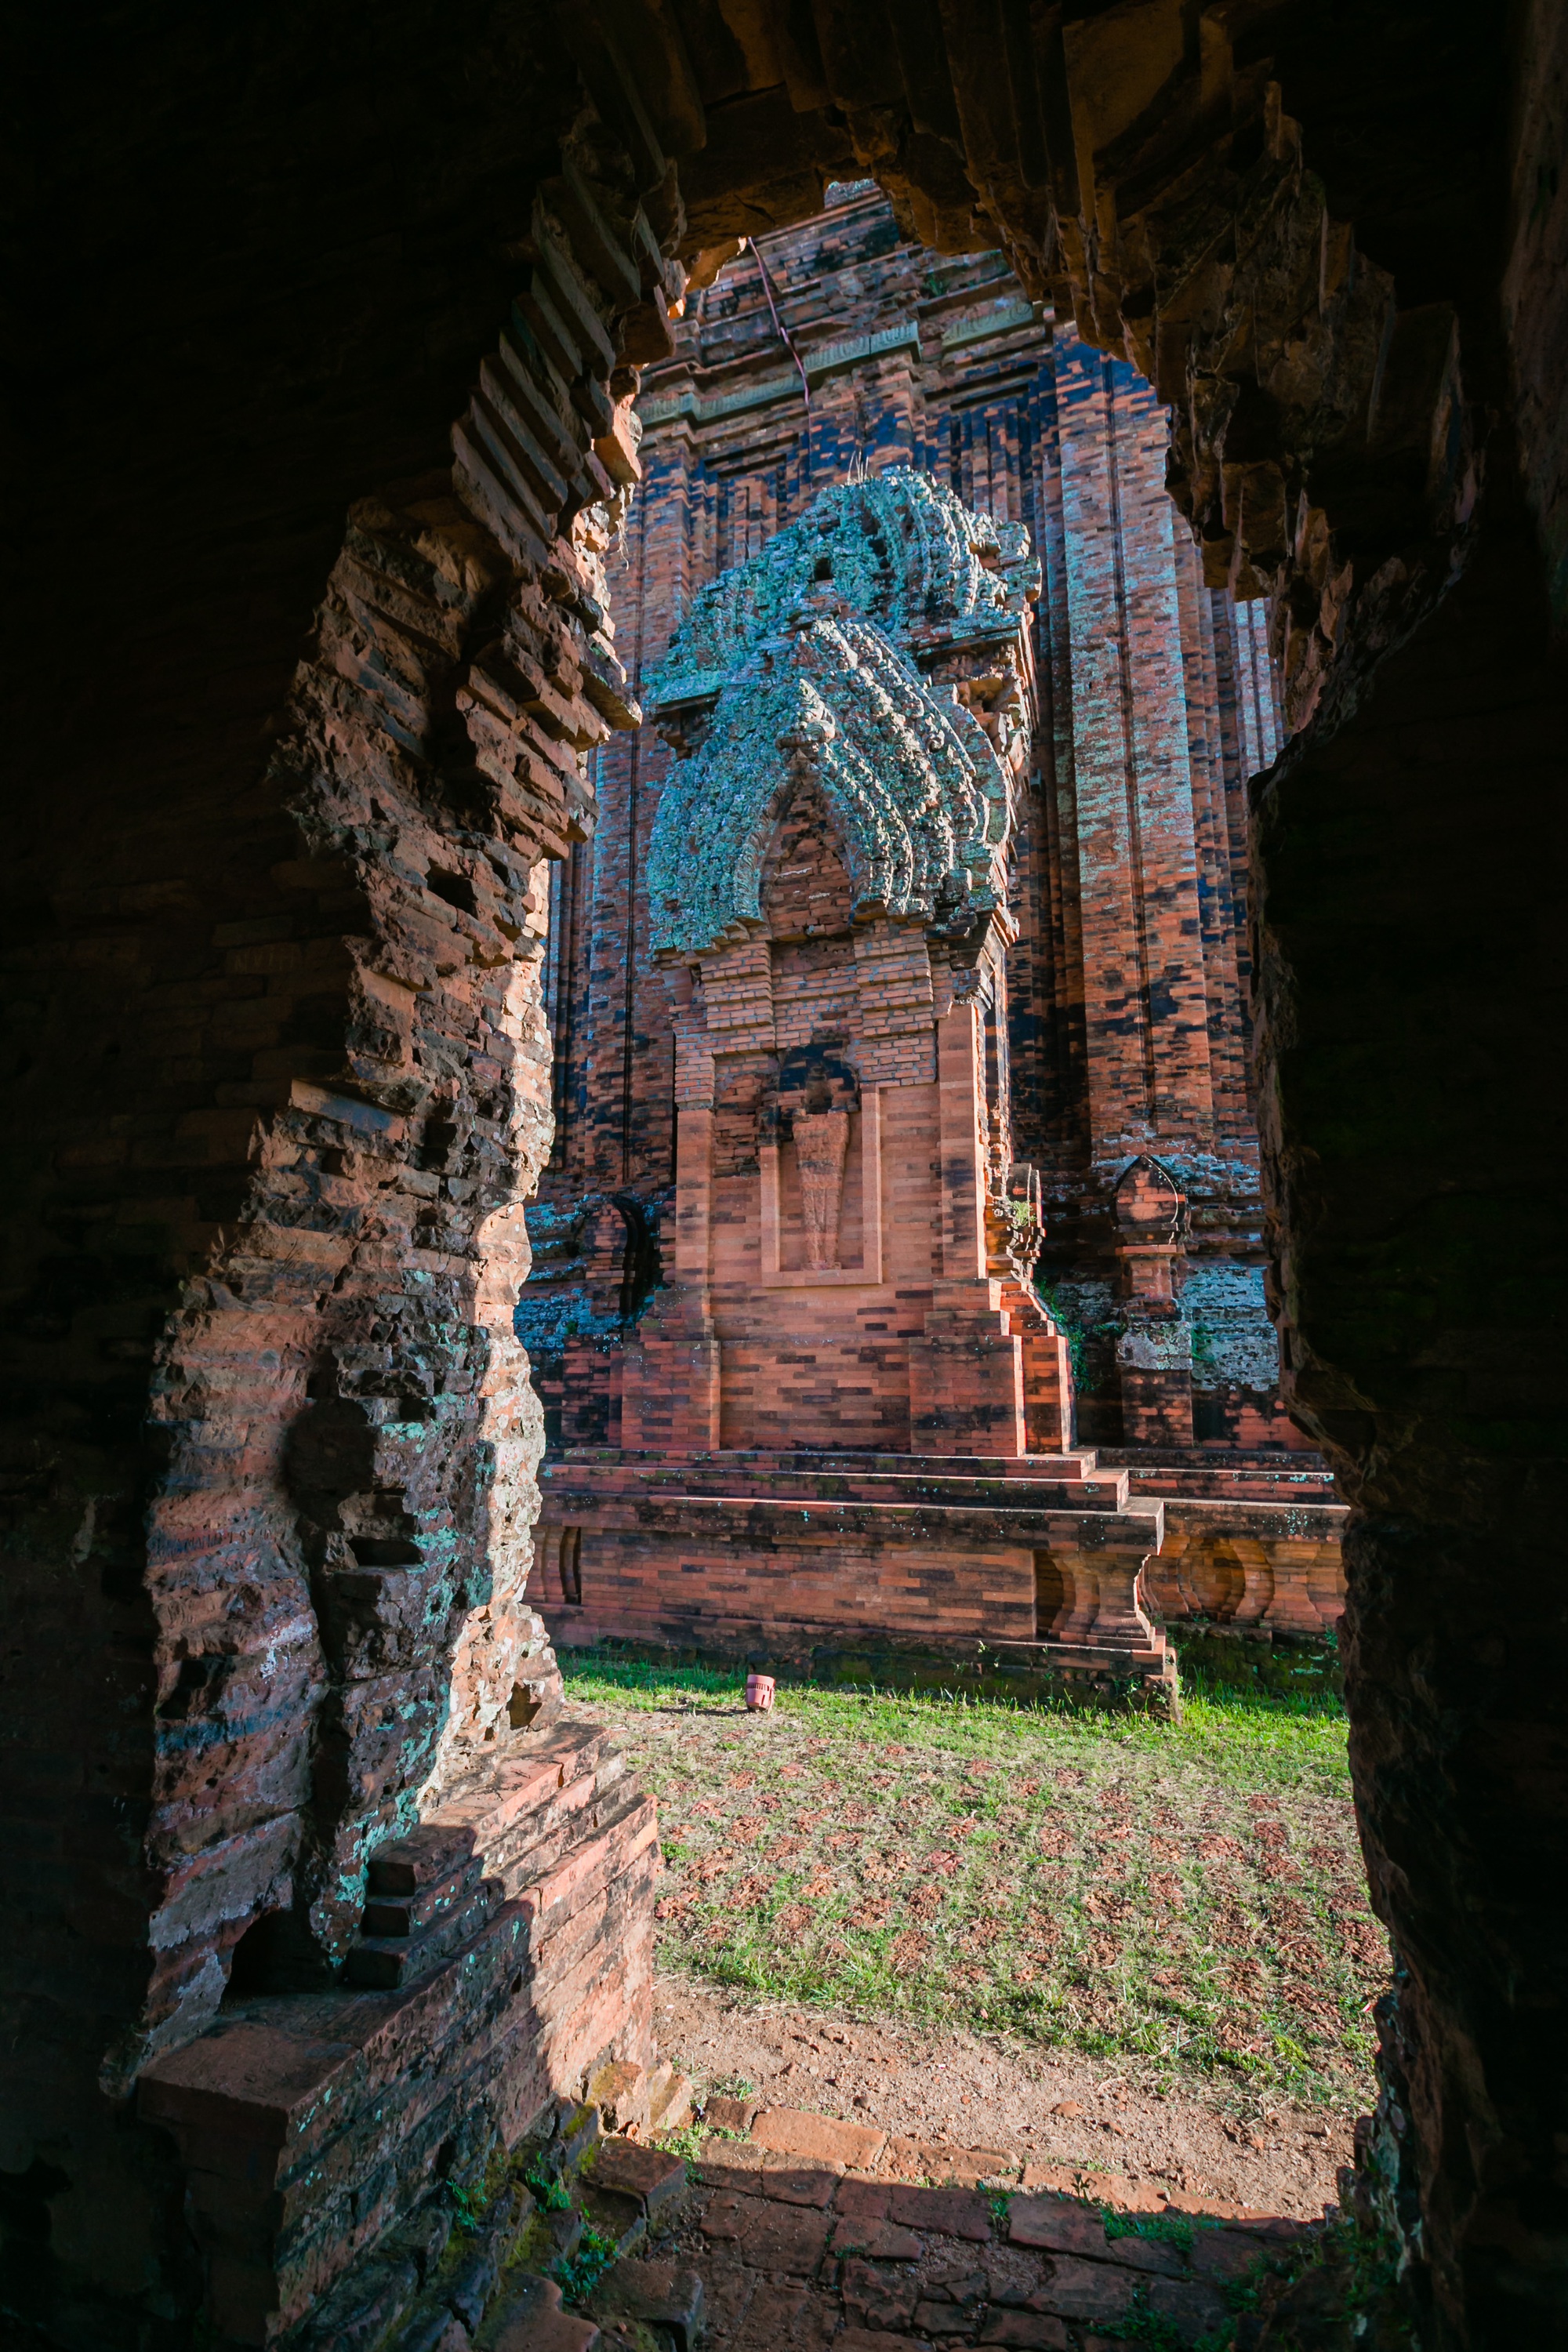 Vẻ đẹp tháp cổ ngàn năm tuổi của người Chăm còn sót lại ở Bình Định - Ảnh 8.